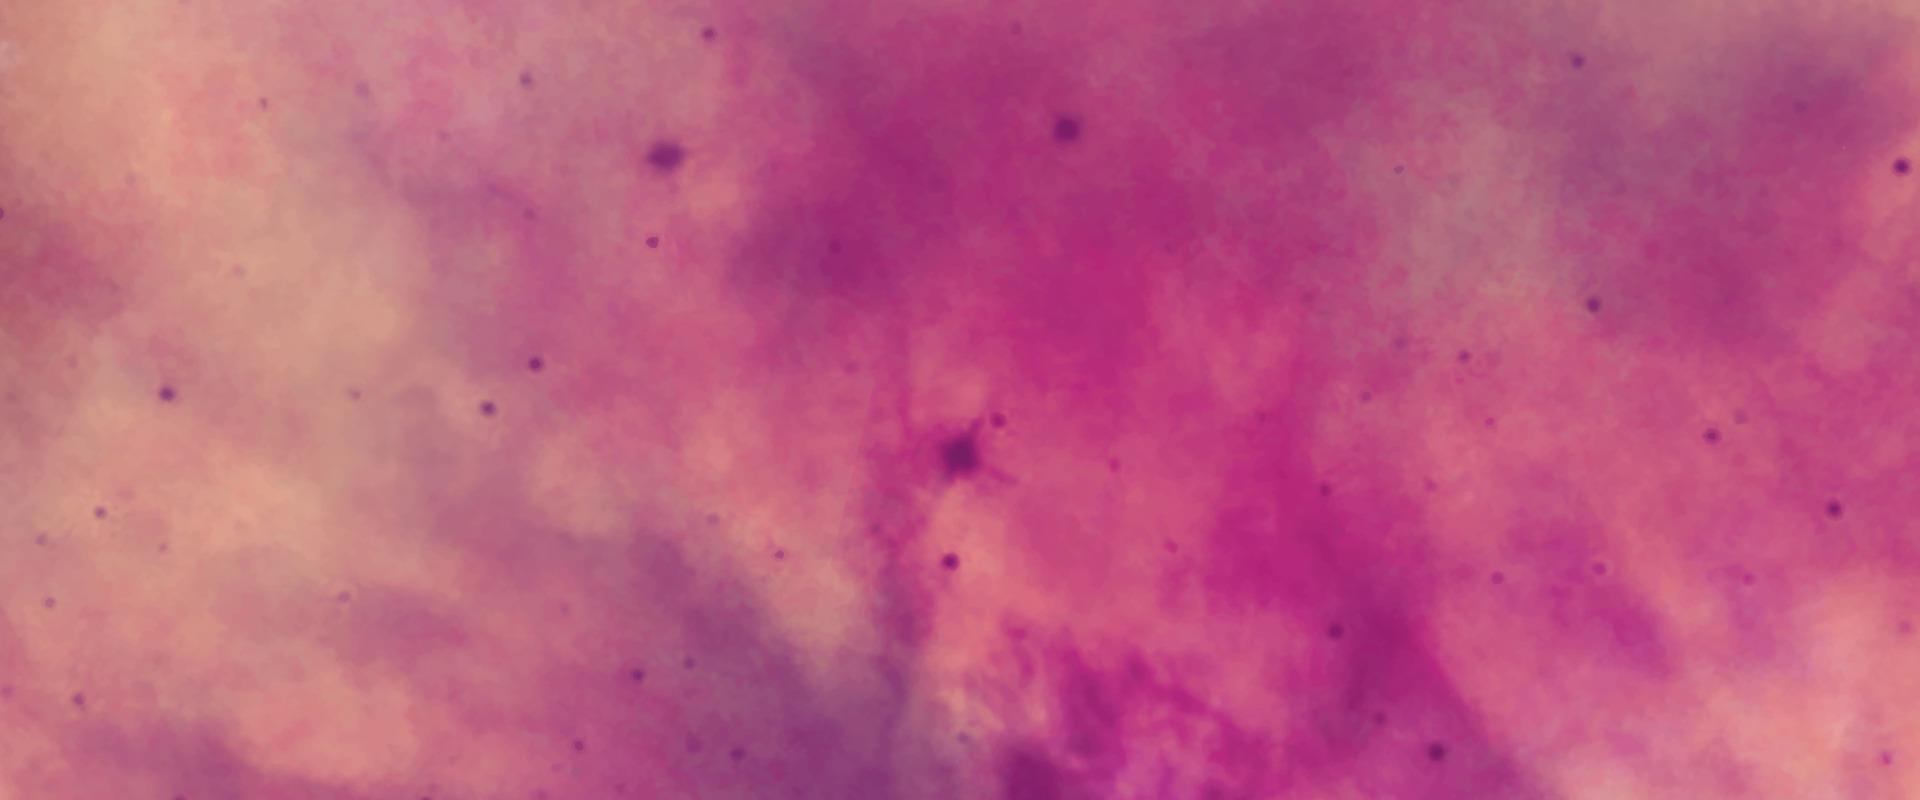 papel de néon fúcsia cósmico abstrato texturizado tela de aquarela para design criativo moderno. aquarela de tinta rosa claro brilhante sobre fundo preto. cor de água de textura de papel magenta. vetor